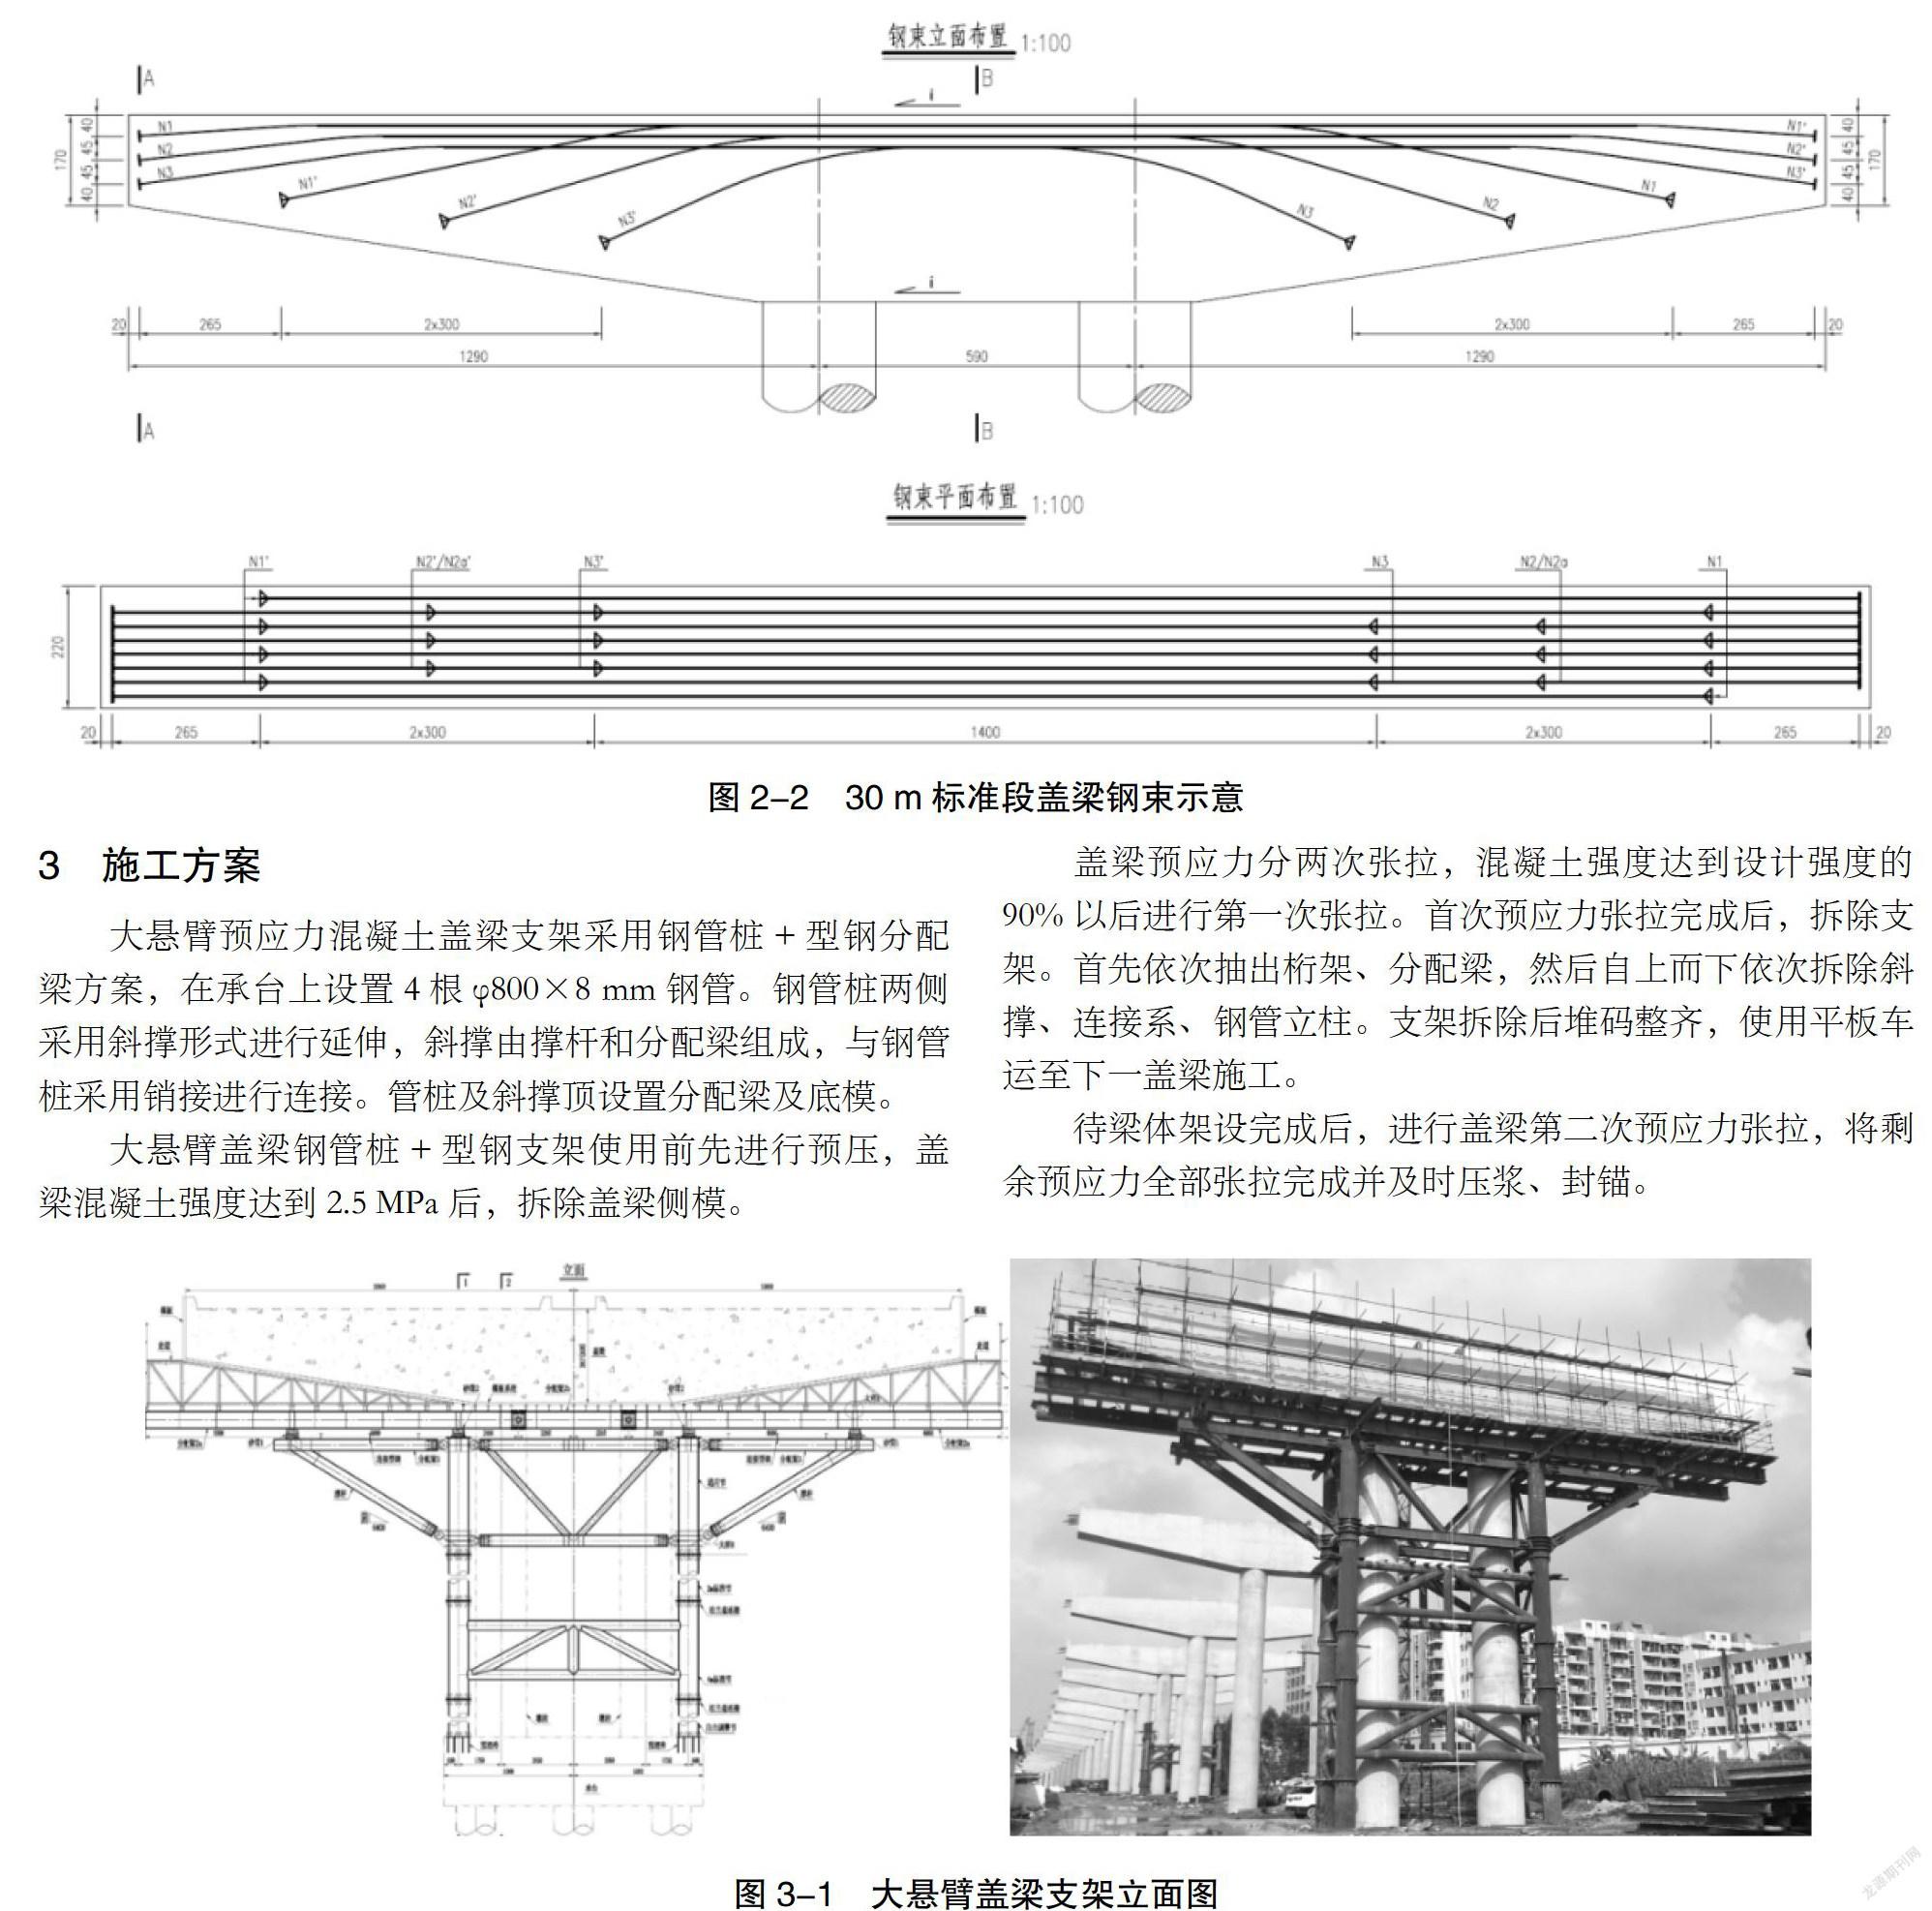 大悬臂盖梁型墩盖梁设计与施工过程分析研究